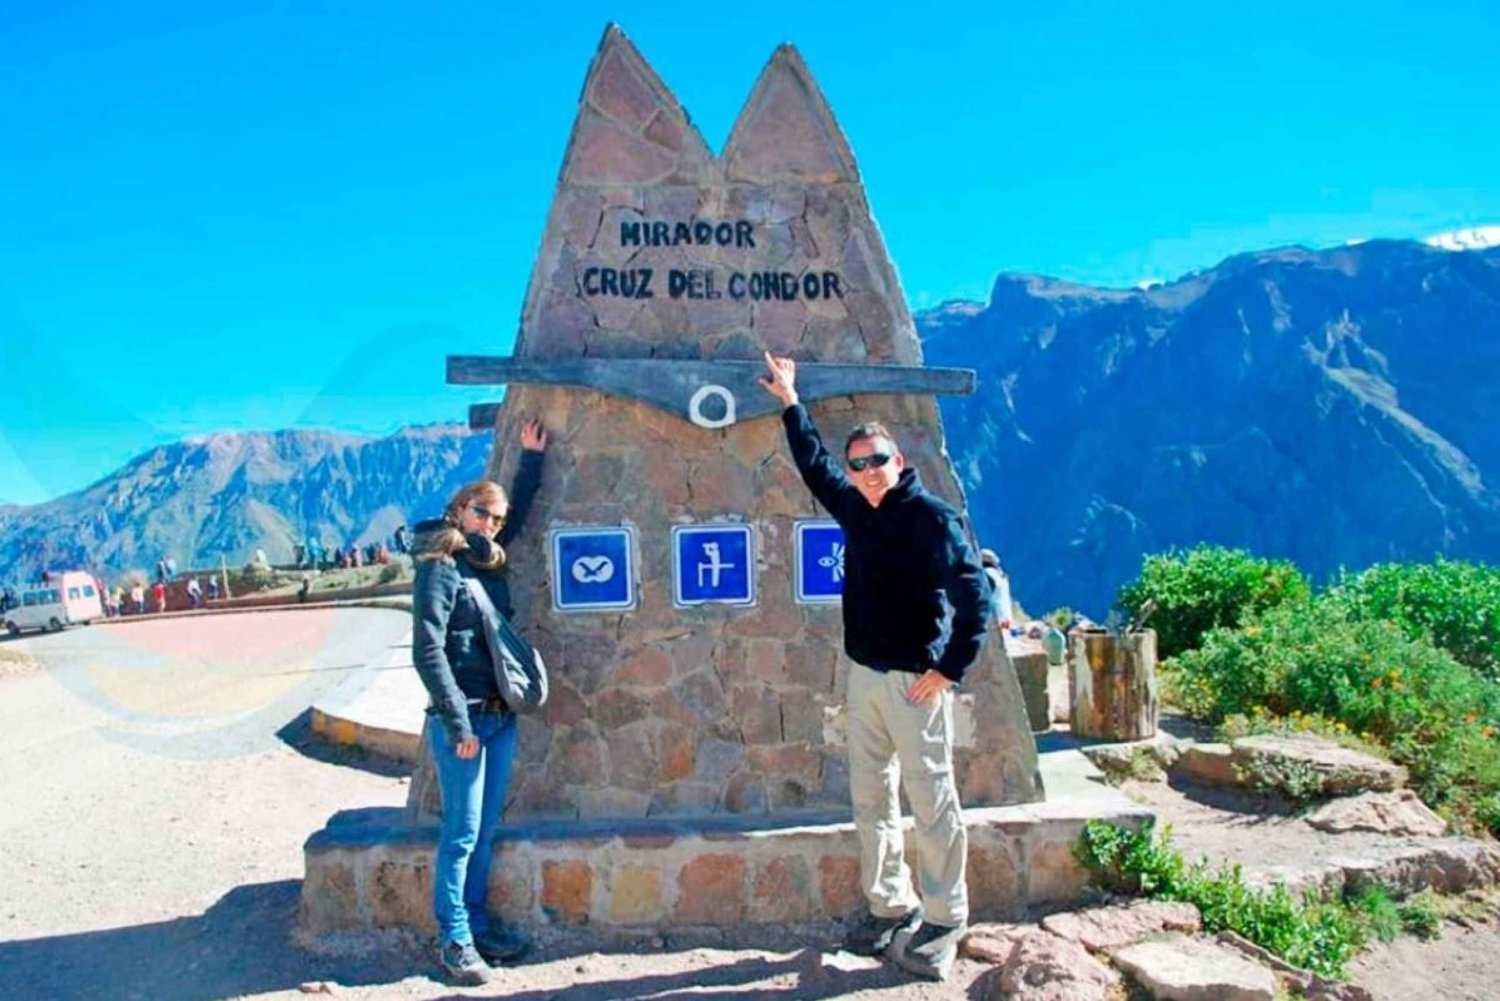 Arequipa: Escursione Colca Canyon, opzione che termina a Puno